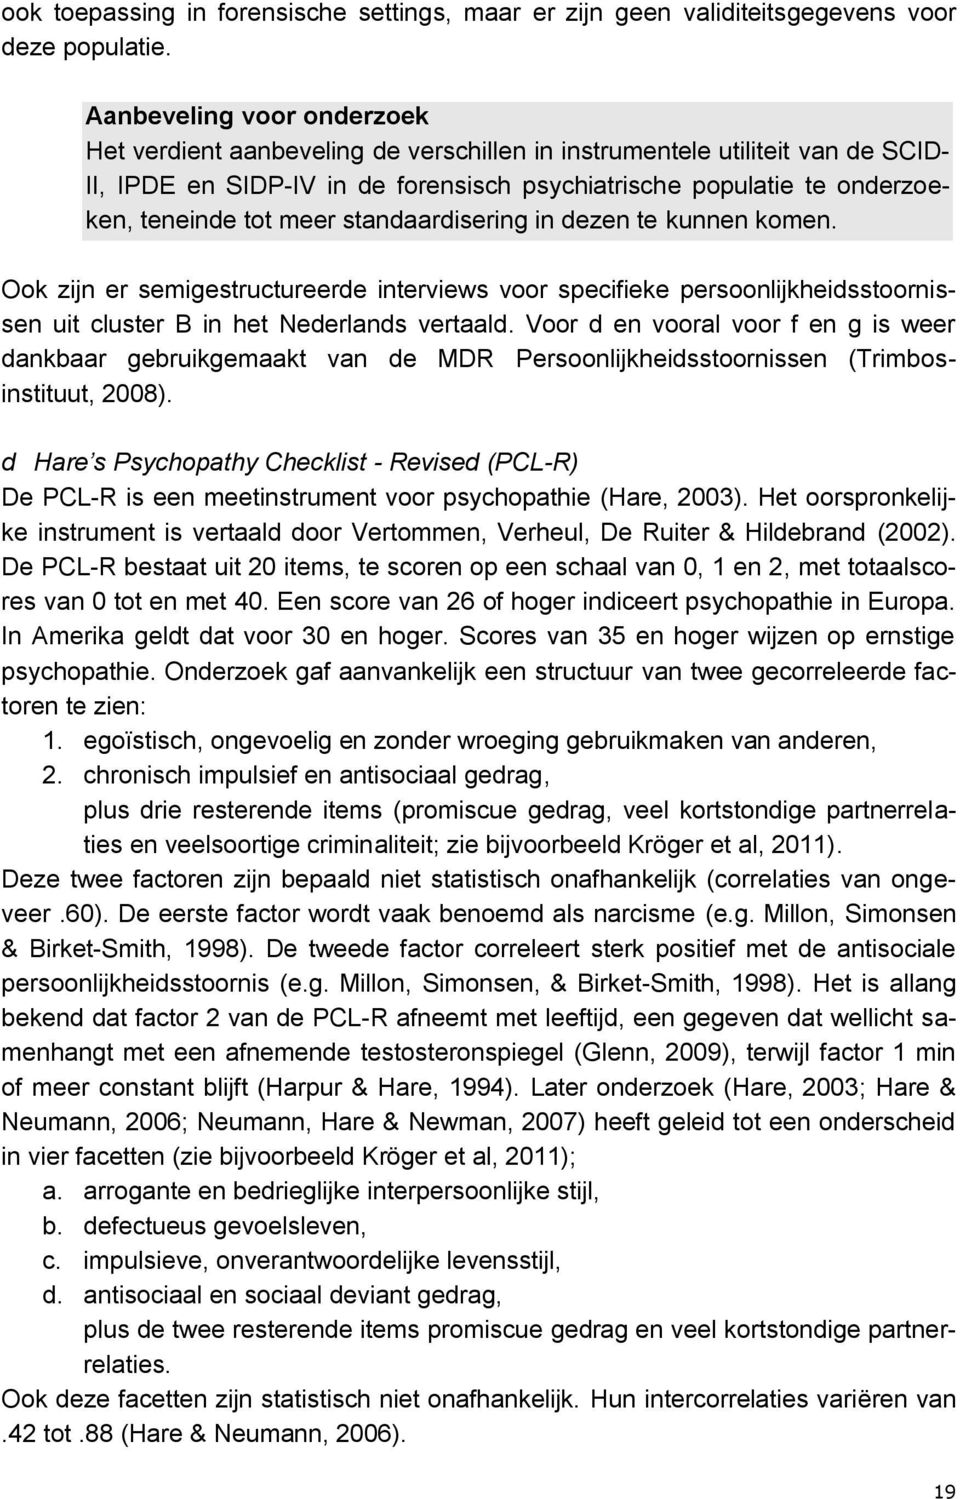 meer standaardisering in dezen te kunnen komen. Ook zijn er semigestructureerde interviews voor specifieke persoonlijkheidsstoornissen uit cluster B in het Nederlands vertaald.